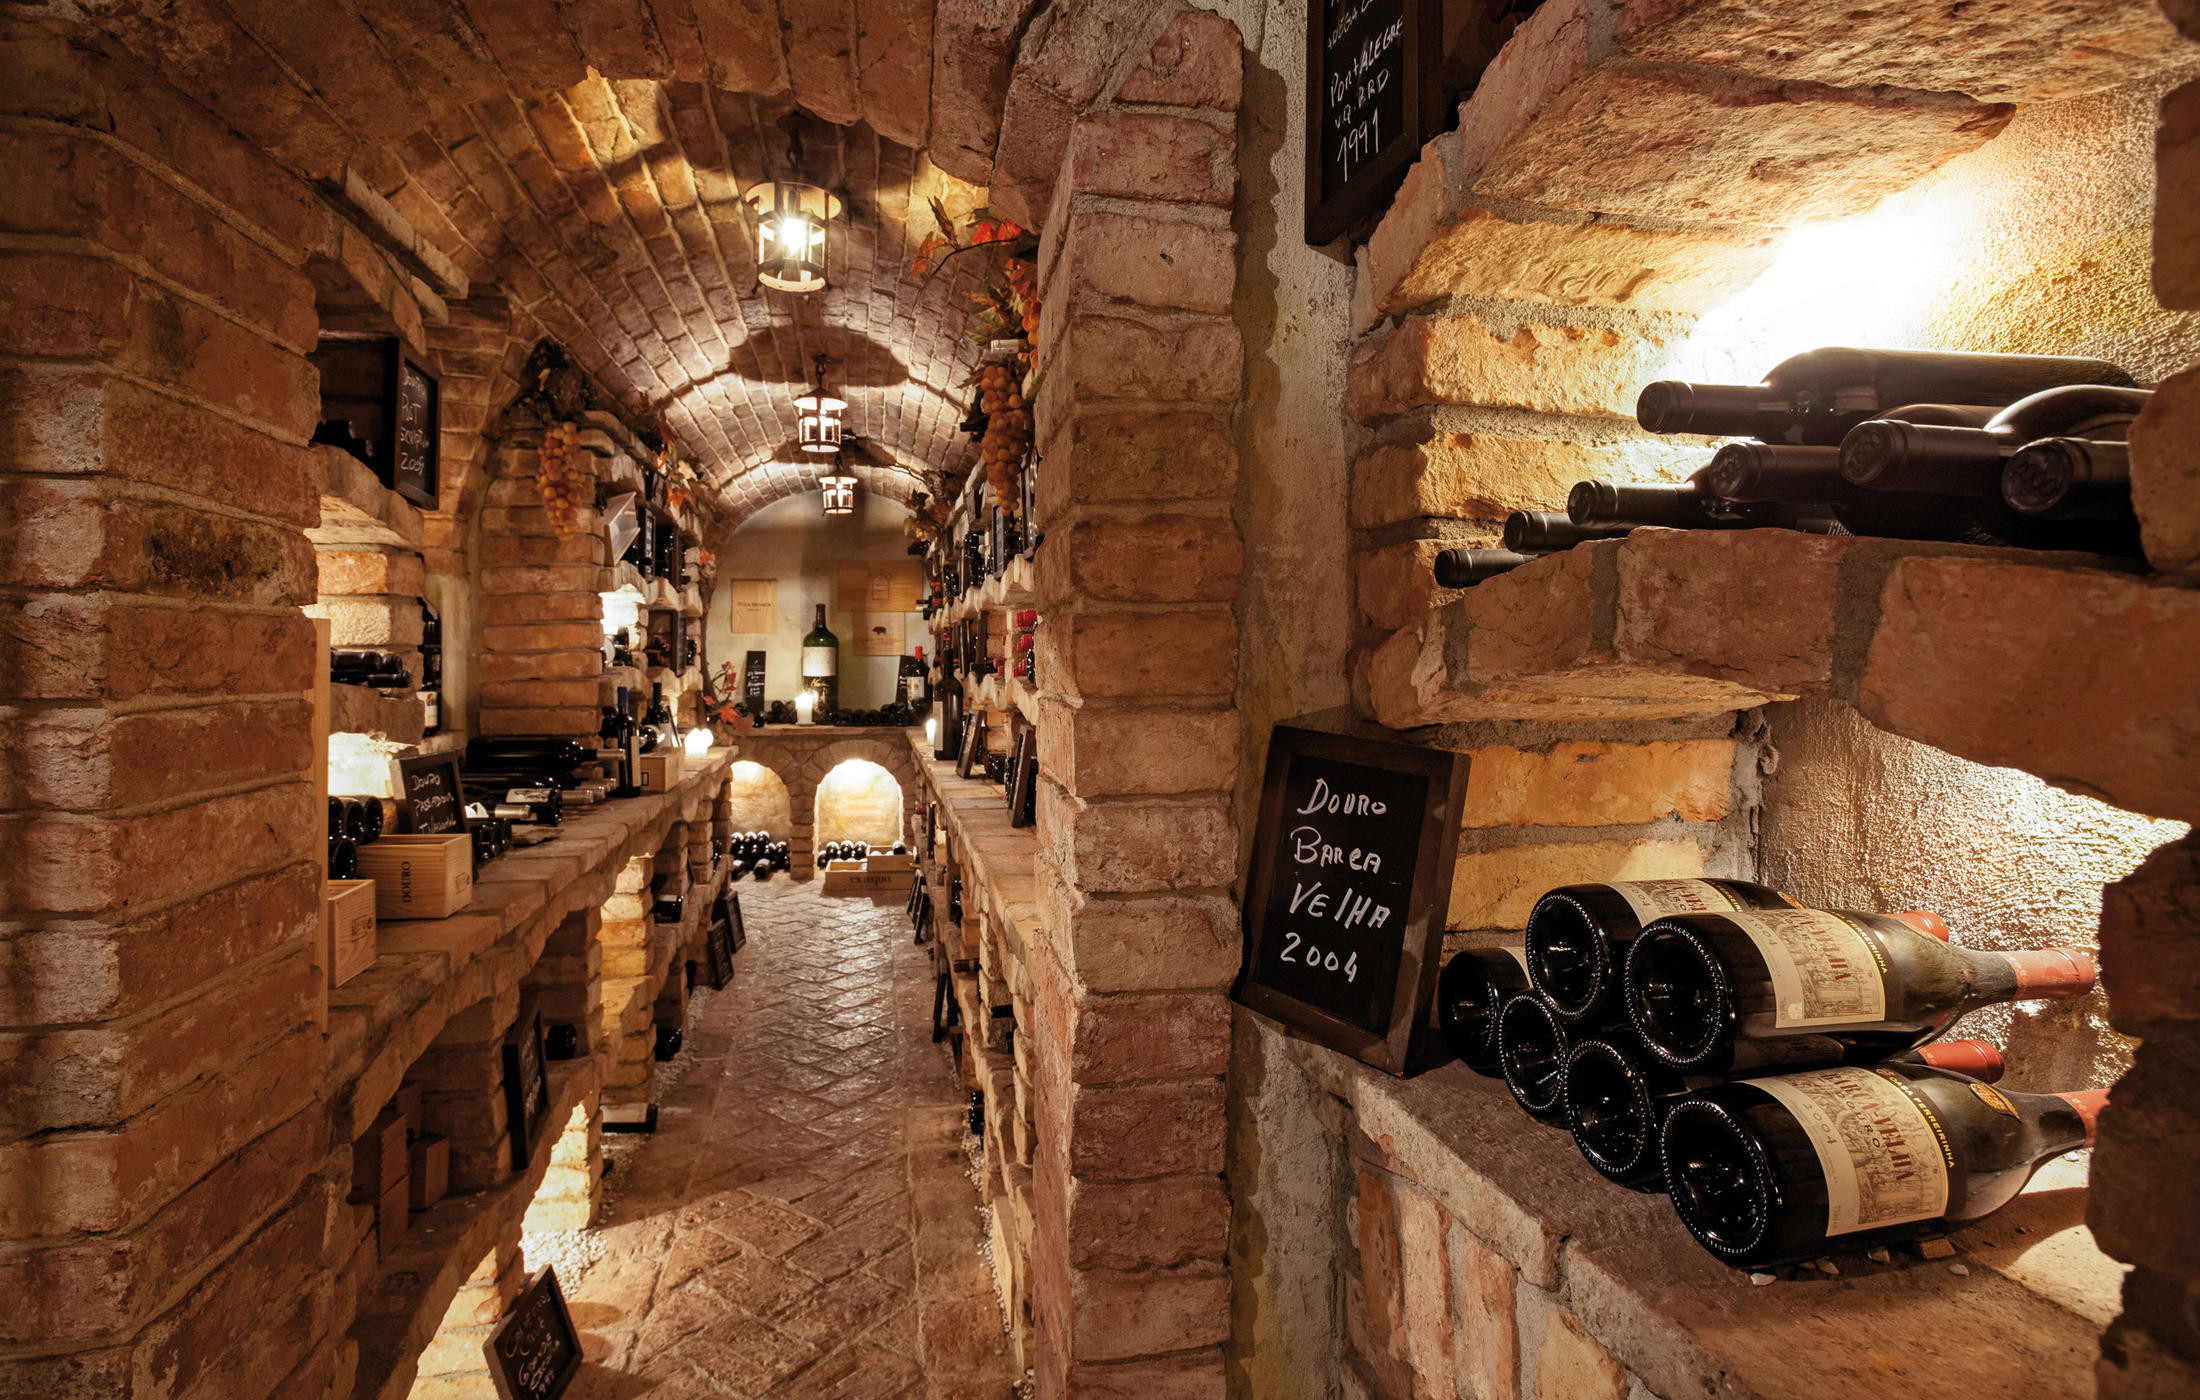 Best ideas about Macy'S Wine Cellar Review
. Save or Pin Cave de Vinhos Restaurants & Bars Now.